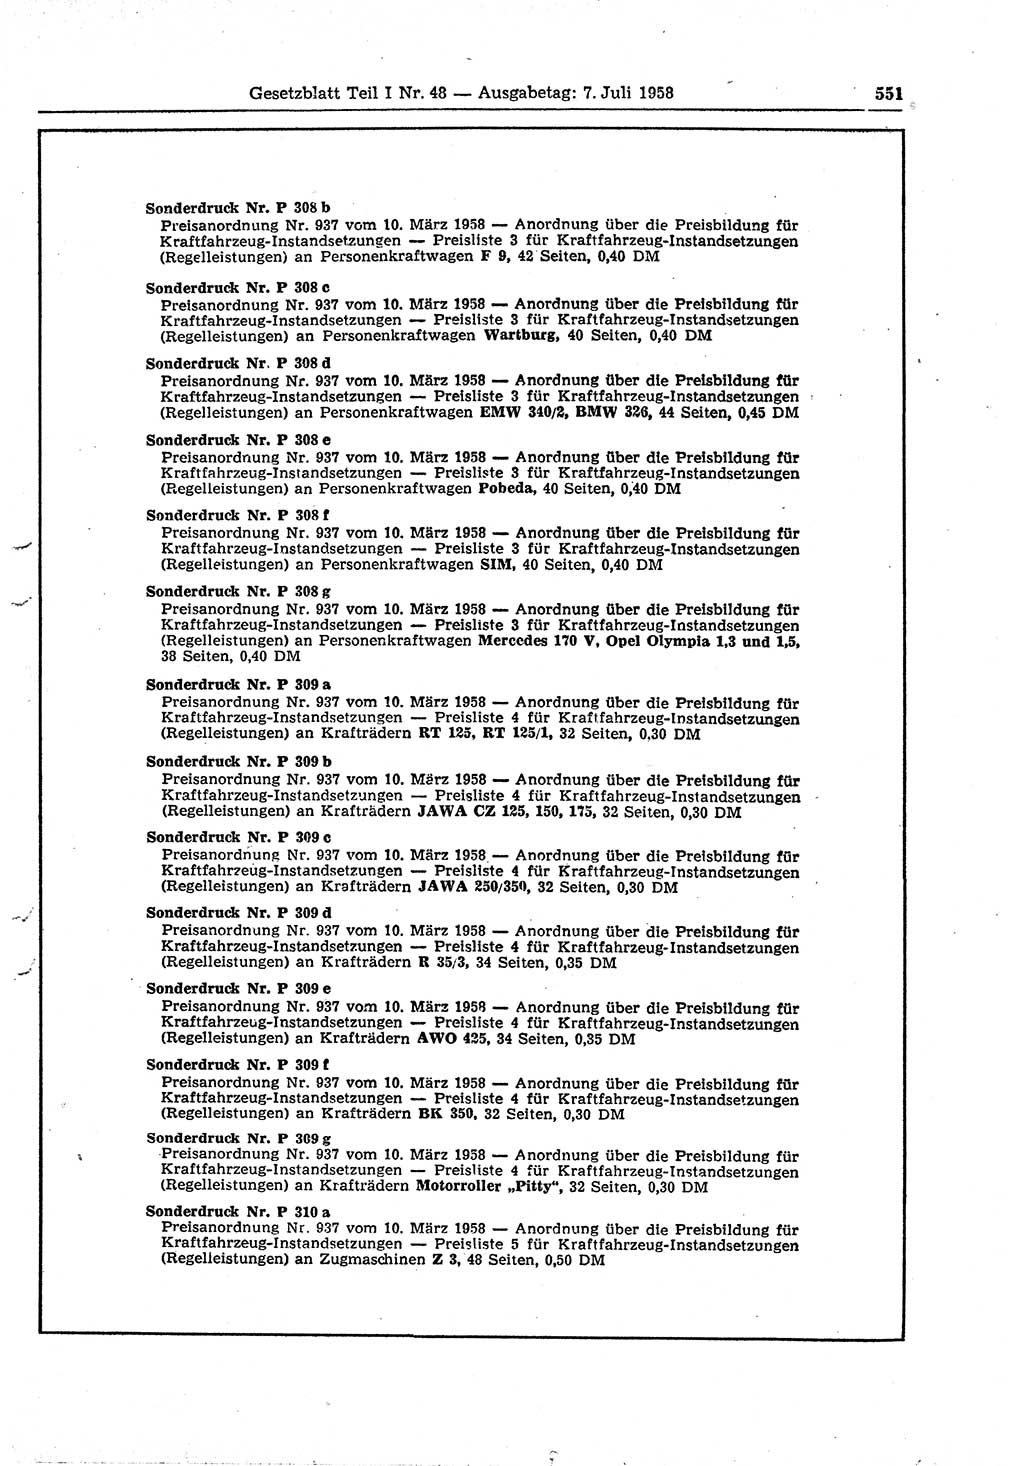 Gesetzblatt (GBl.) der Deutschen Demokratischen Republik (DDR) Teil Ⅰ 1958, Seite 551 (GBl. DDR Ⅰ 1958, S. 551)